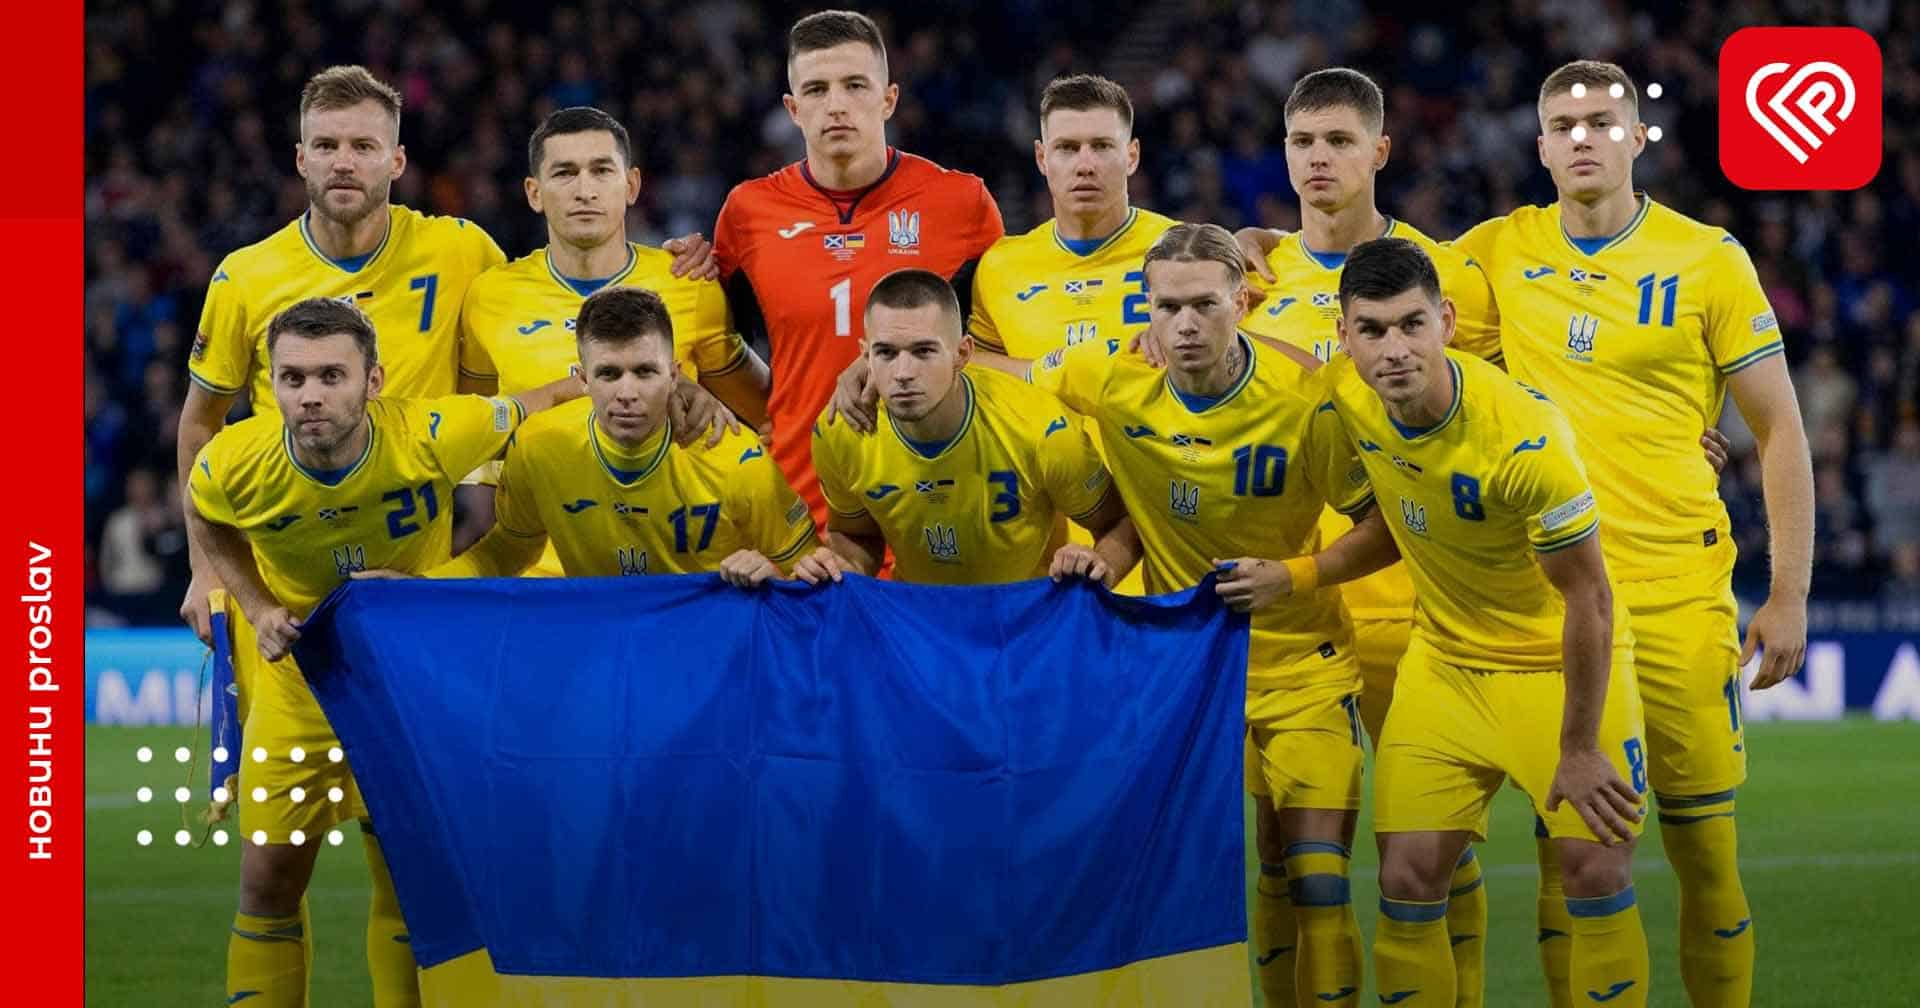 Збірна України з футболу проведе два матчі у рамках відбору до Чемпіонату Європи